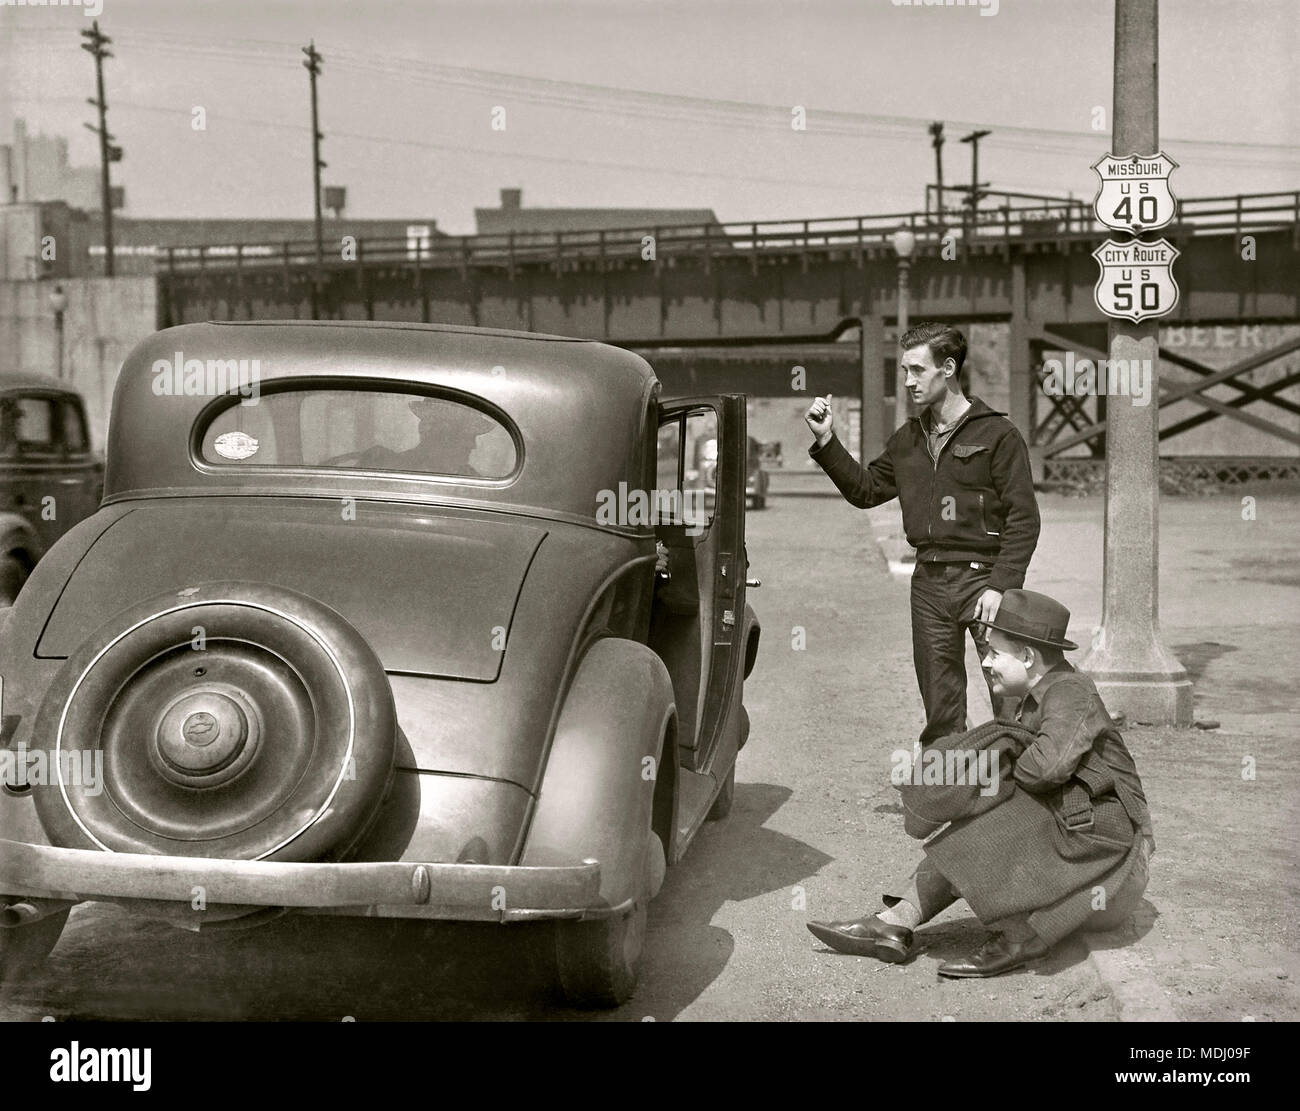 Un misterioso guidatore apre la portiera della macchina per due uomini autostop in Kansas City, Kansas. Immagine da 5x7 pollici fotocamera negativo, circa 1934. Foto Stock